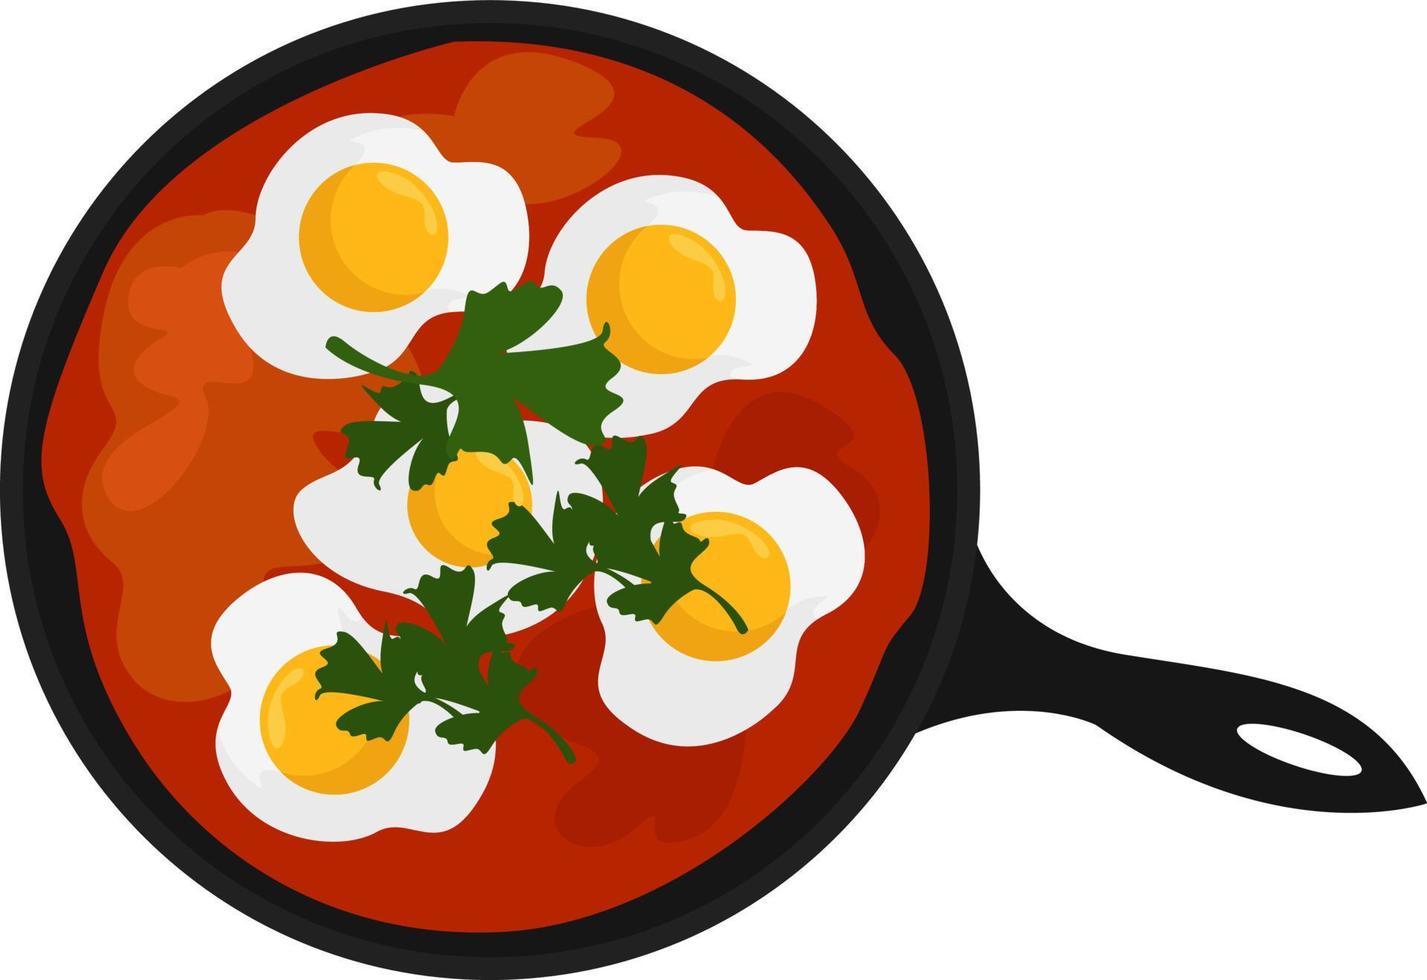 ovos fritos com tomate, ilustração, vetor em fundo branco